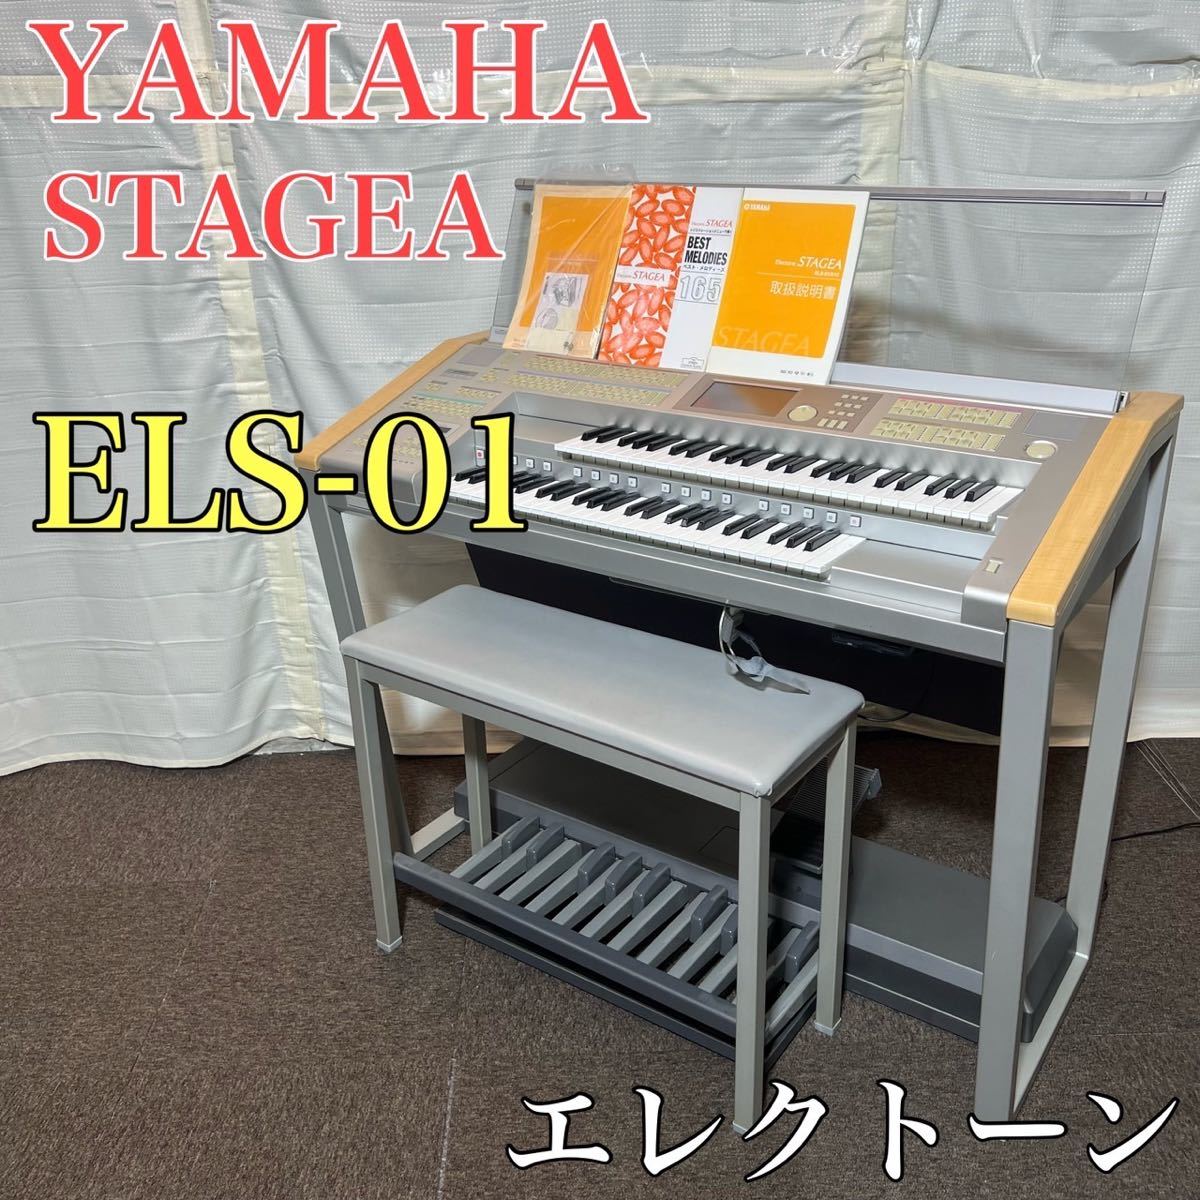 YAMAHA エレクトーン STAGEA ELS-01 音楽 楽器 A0292-siegfried.com.ec